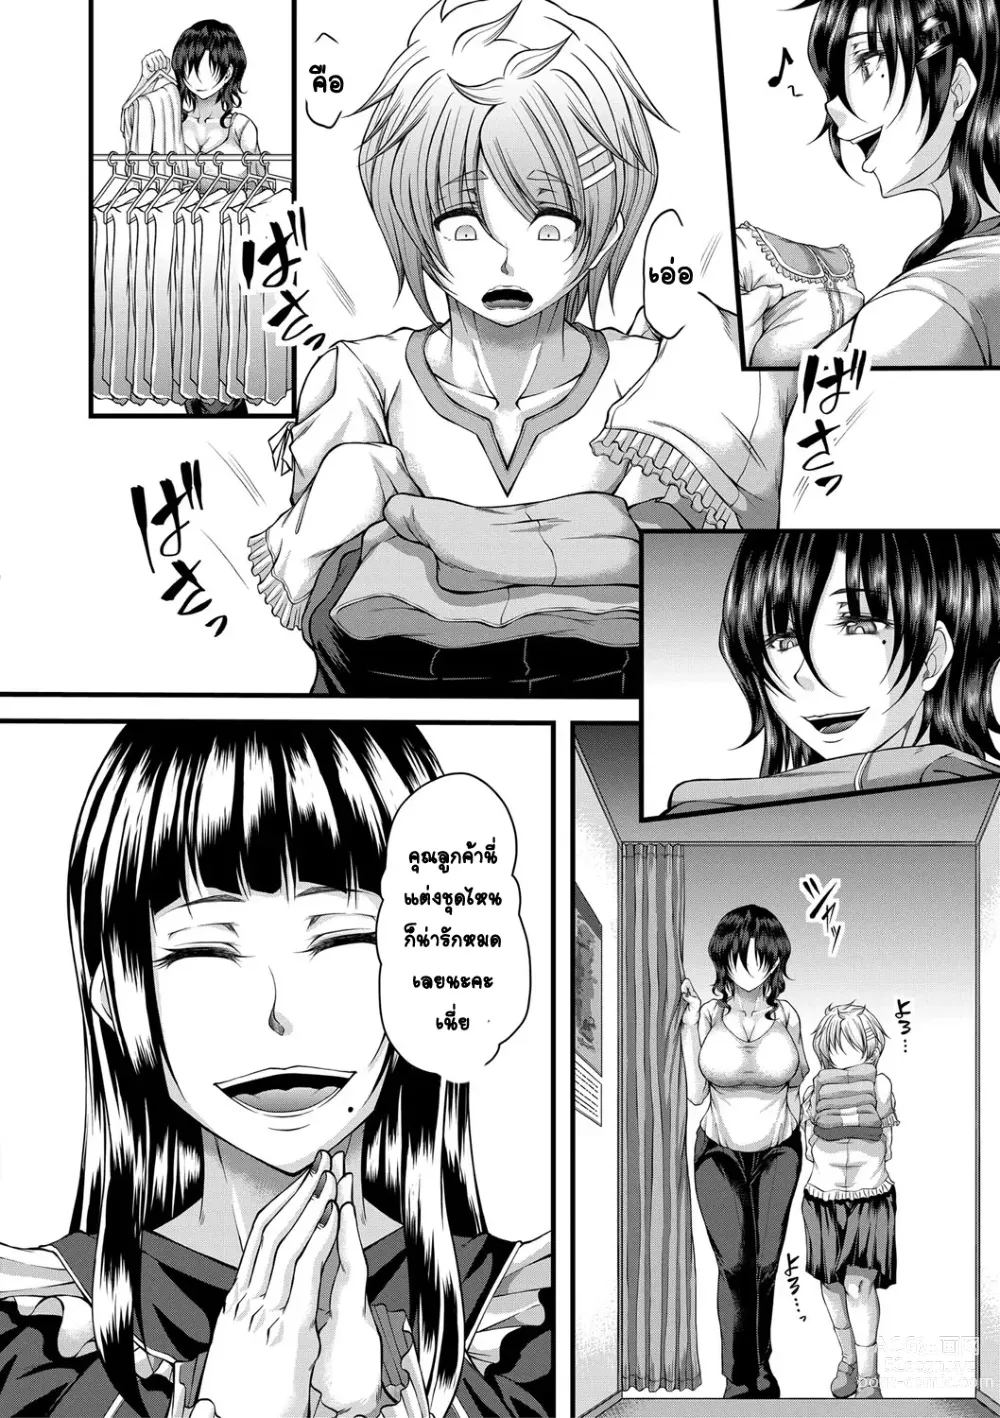 Page 6 of manga kakitsubata Kanae yoru onna ryushi wa han me rarenai 2